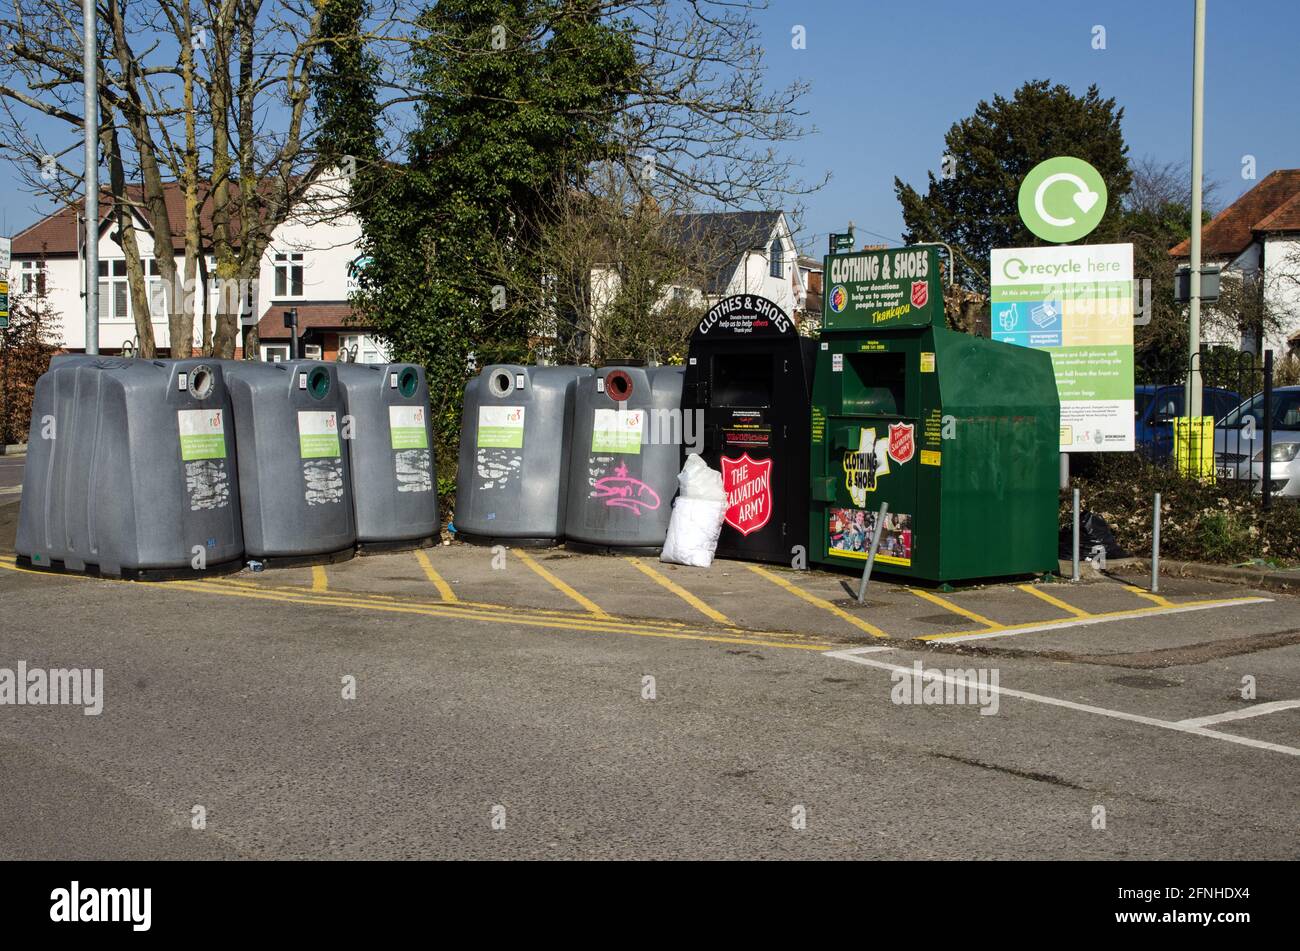 Wokingham, Regno Unito - 28 febbraio 2021: Grandi bidoni per il riciclaggio di piccoli oggetti come bottiglie, lattine e vestiti in un parcheggio nel centro di Wokingham, BE Foto Stock